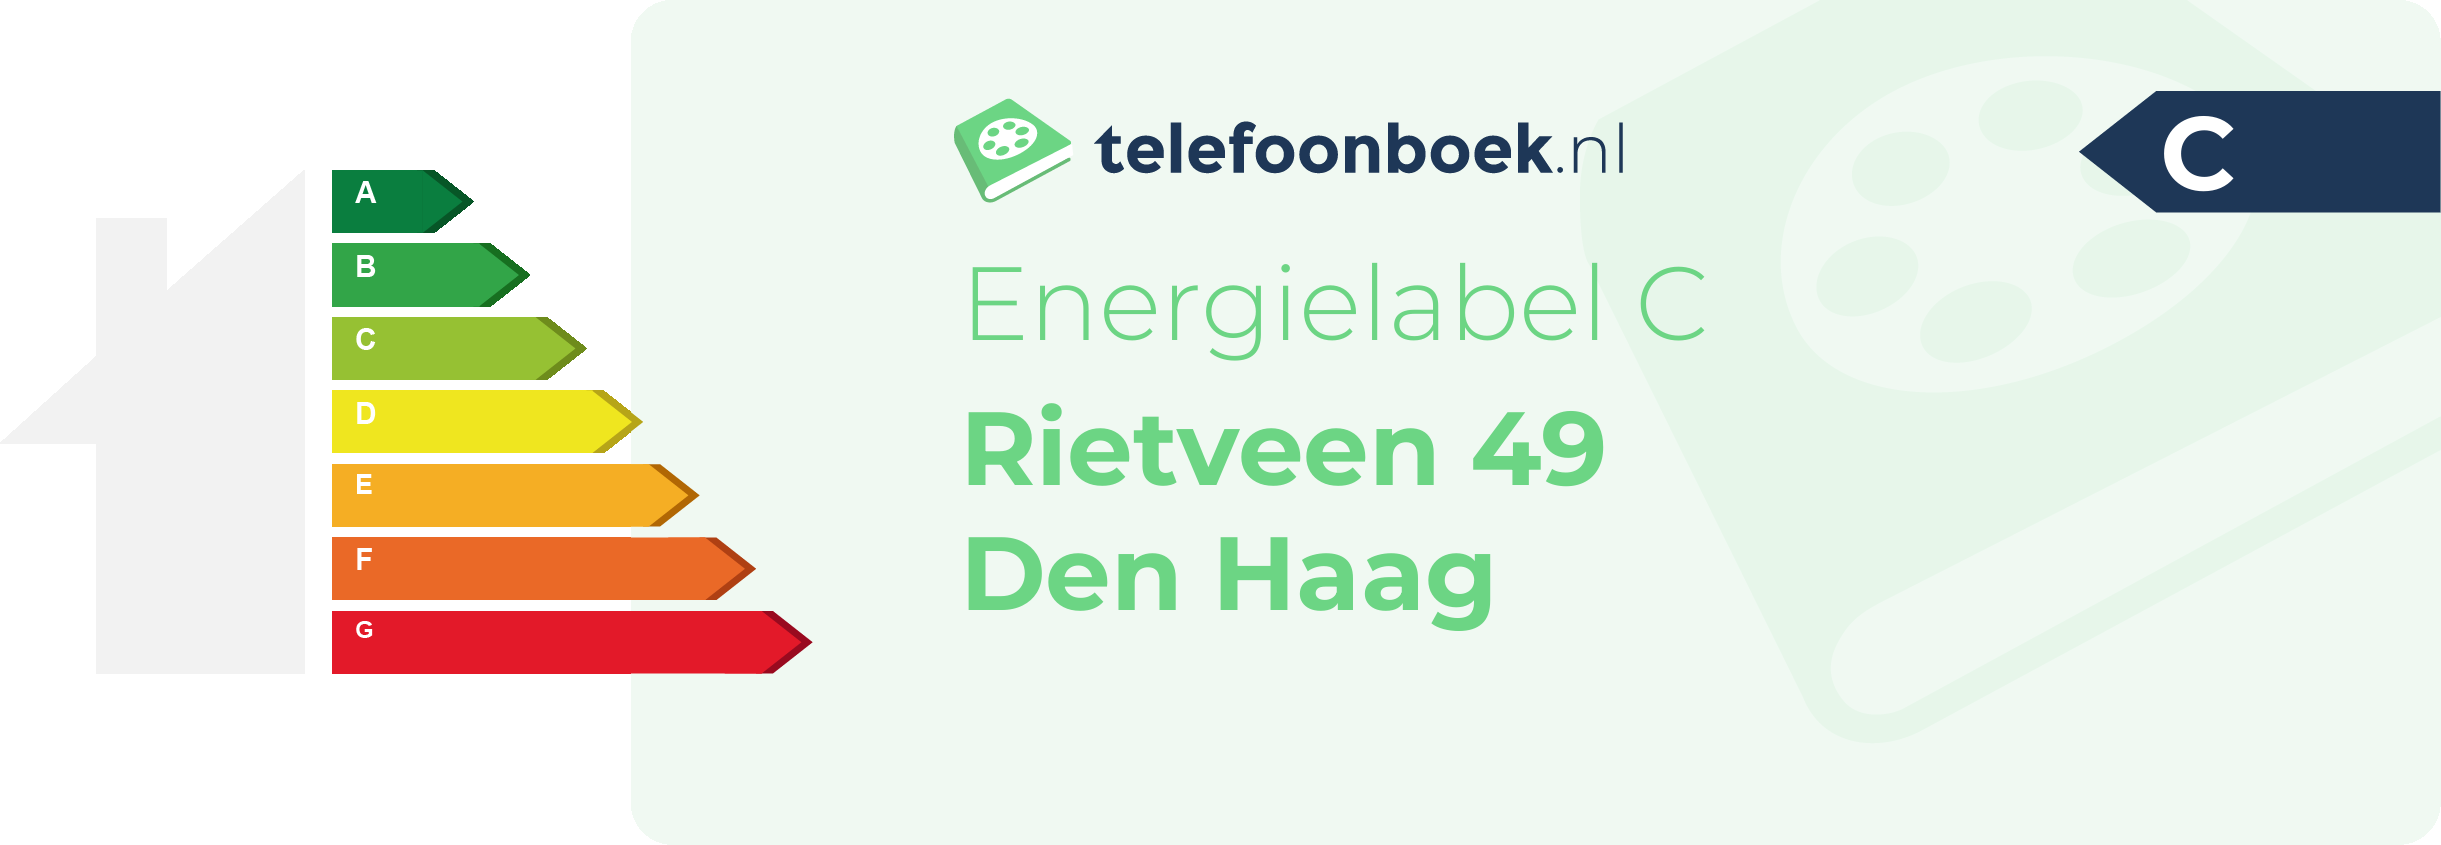 Energielabel Rietveen 49 Den Haag